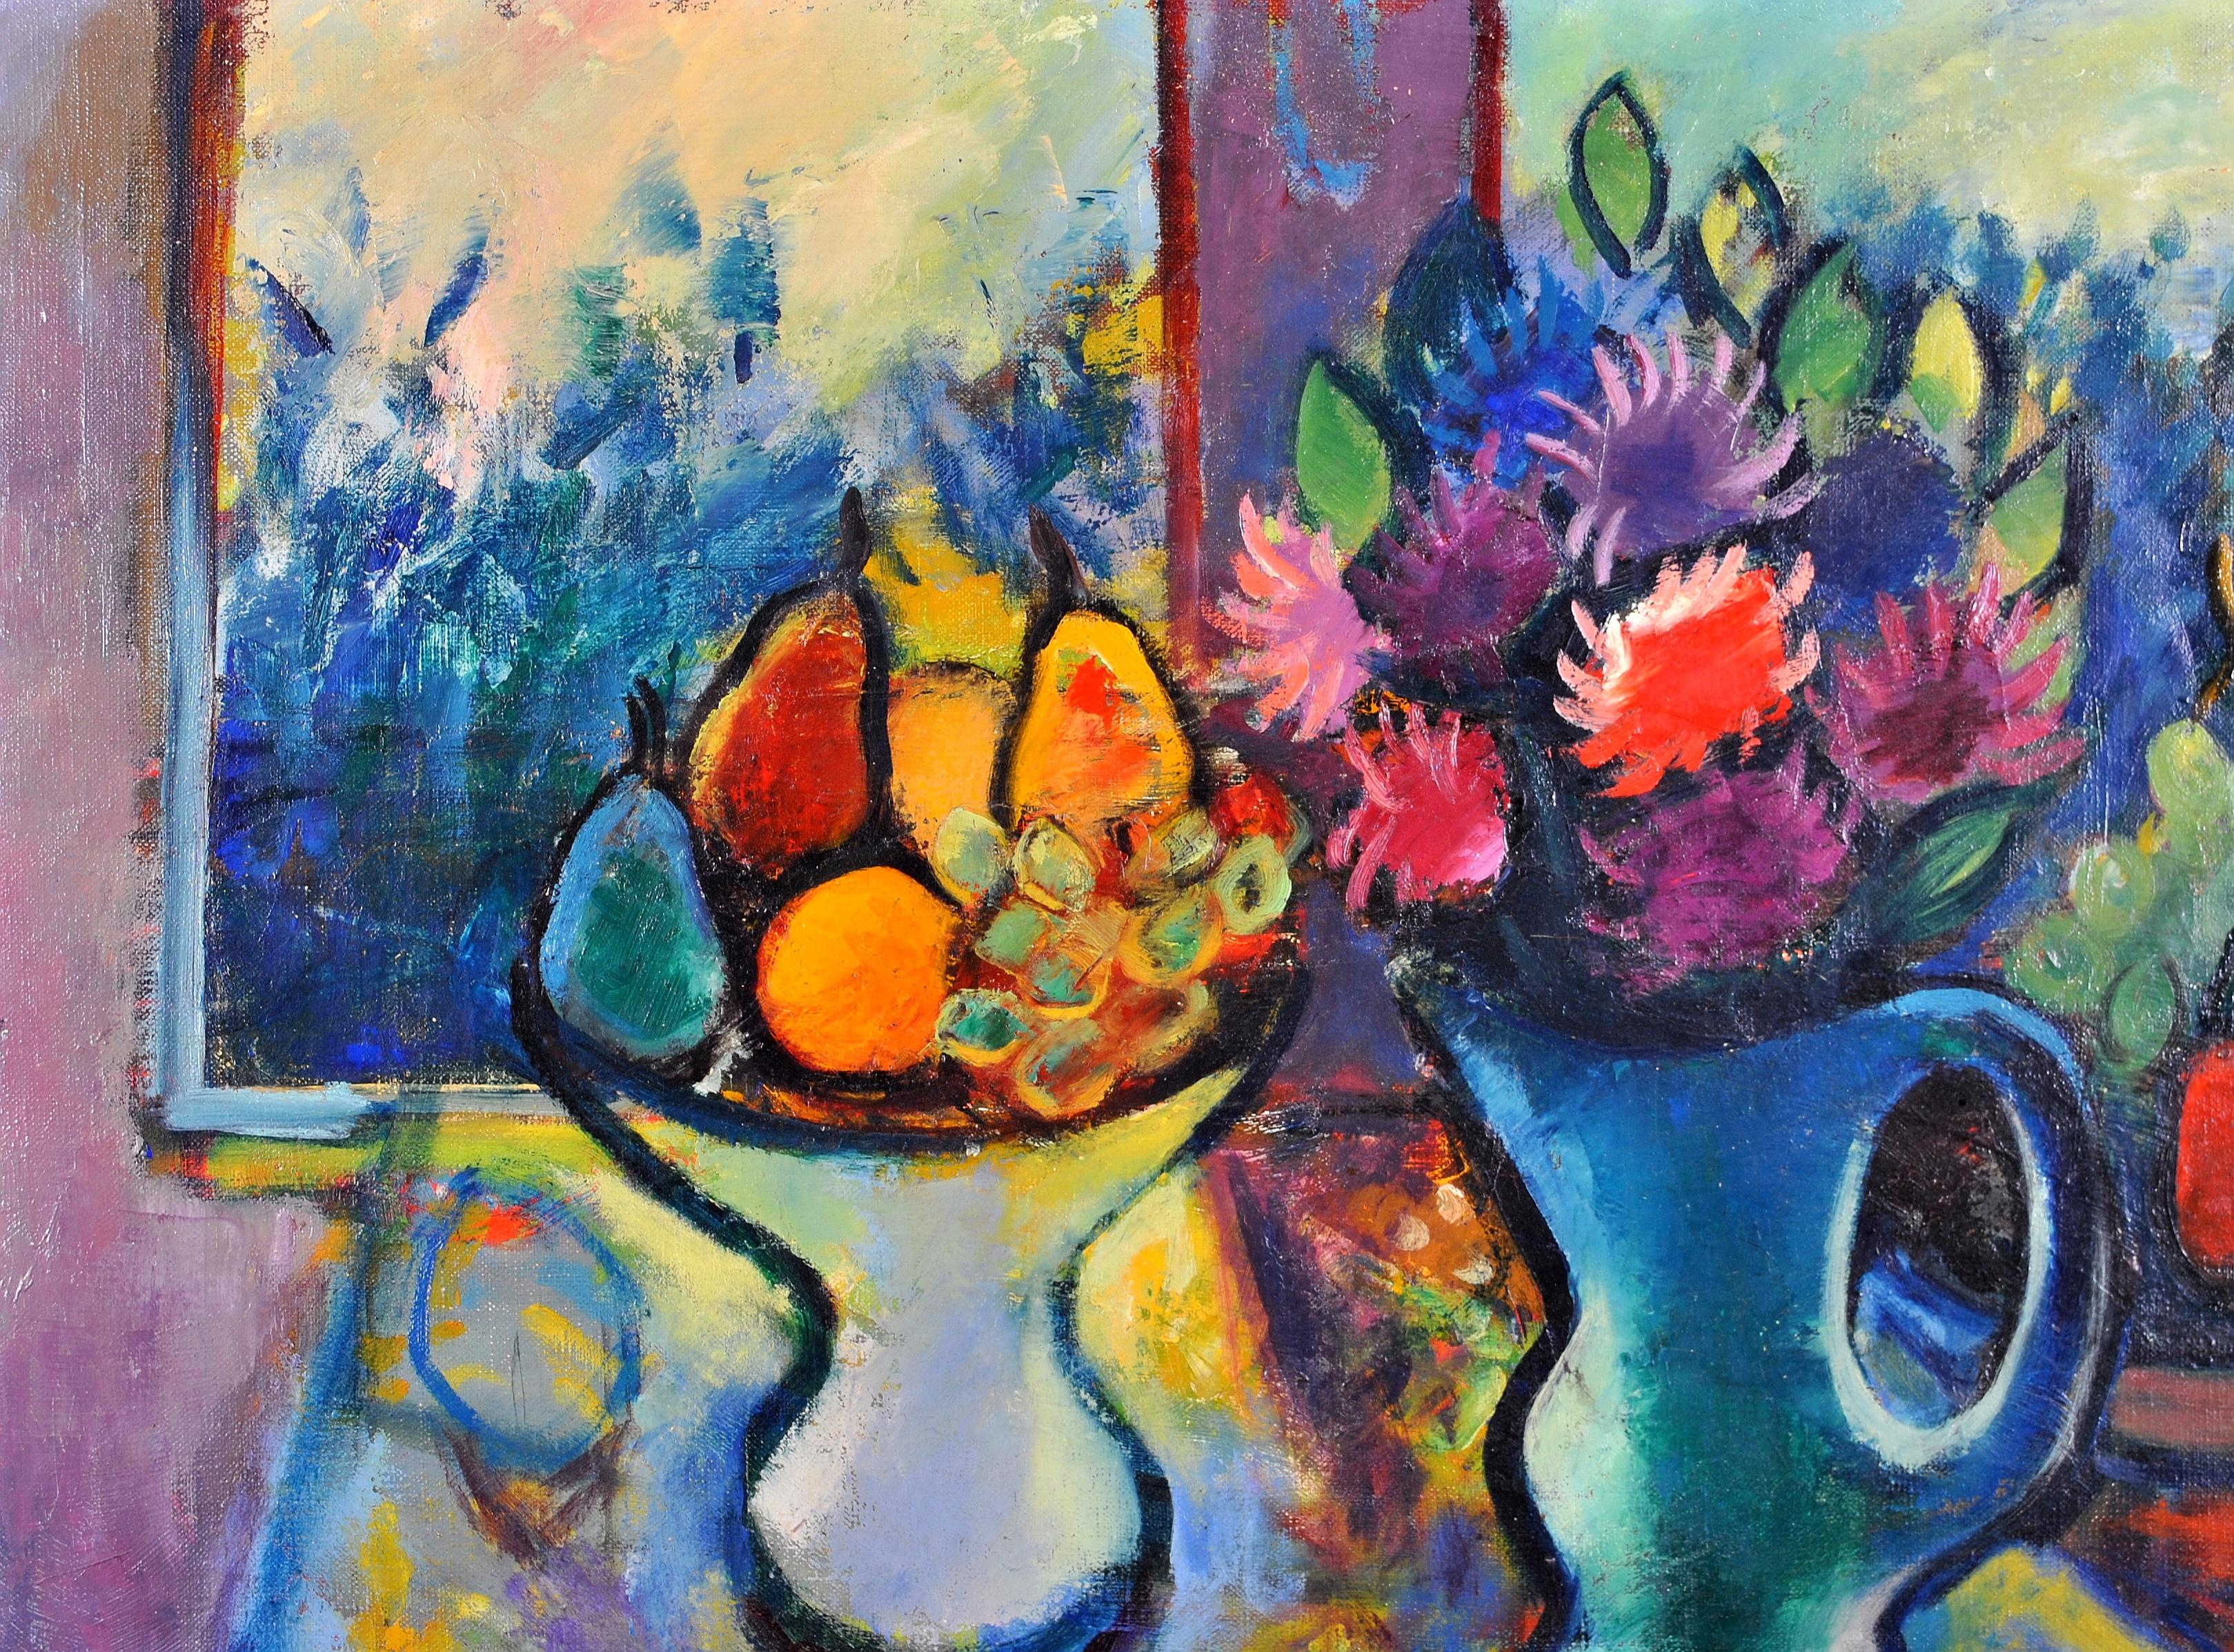 Magnifique huile sur toile expressionniste française des années 1950 représentant des fleurs et des fruits dans une fenêtre par Philippe Marie René Picard. Nature morte lumineuse et colorée à bonne échelle. Signé en bas à droite.

Artistics :